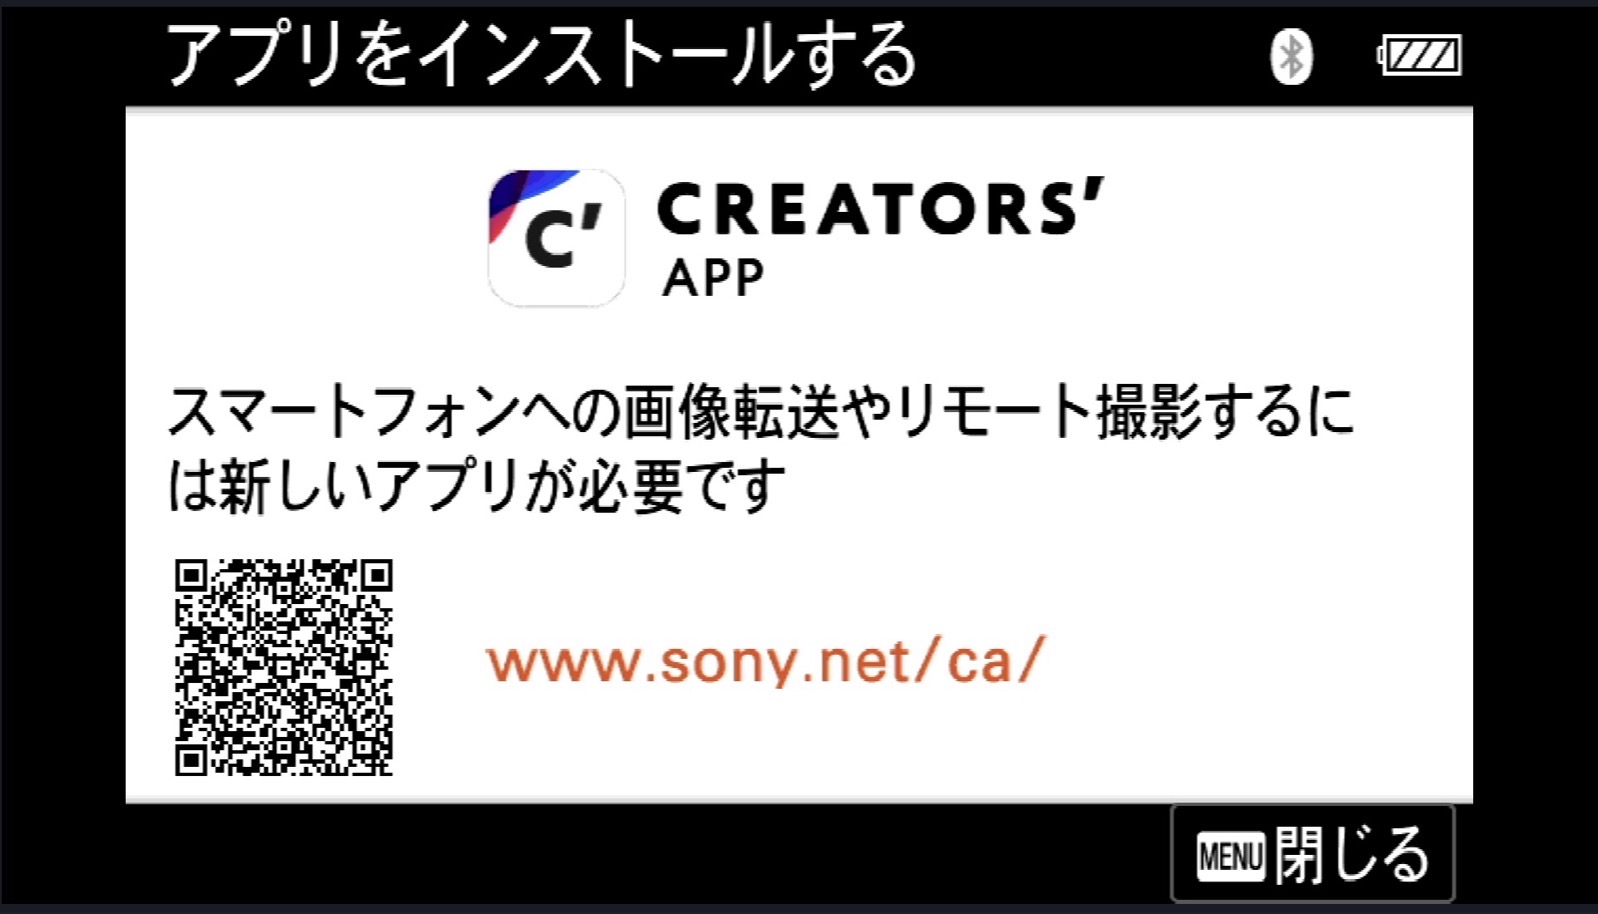 Creators' App